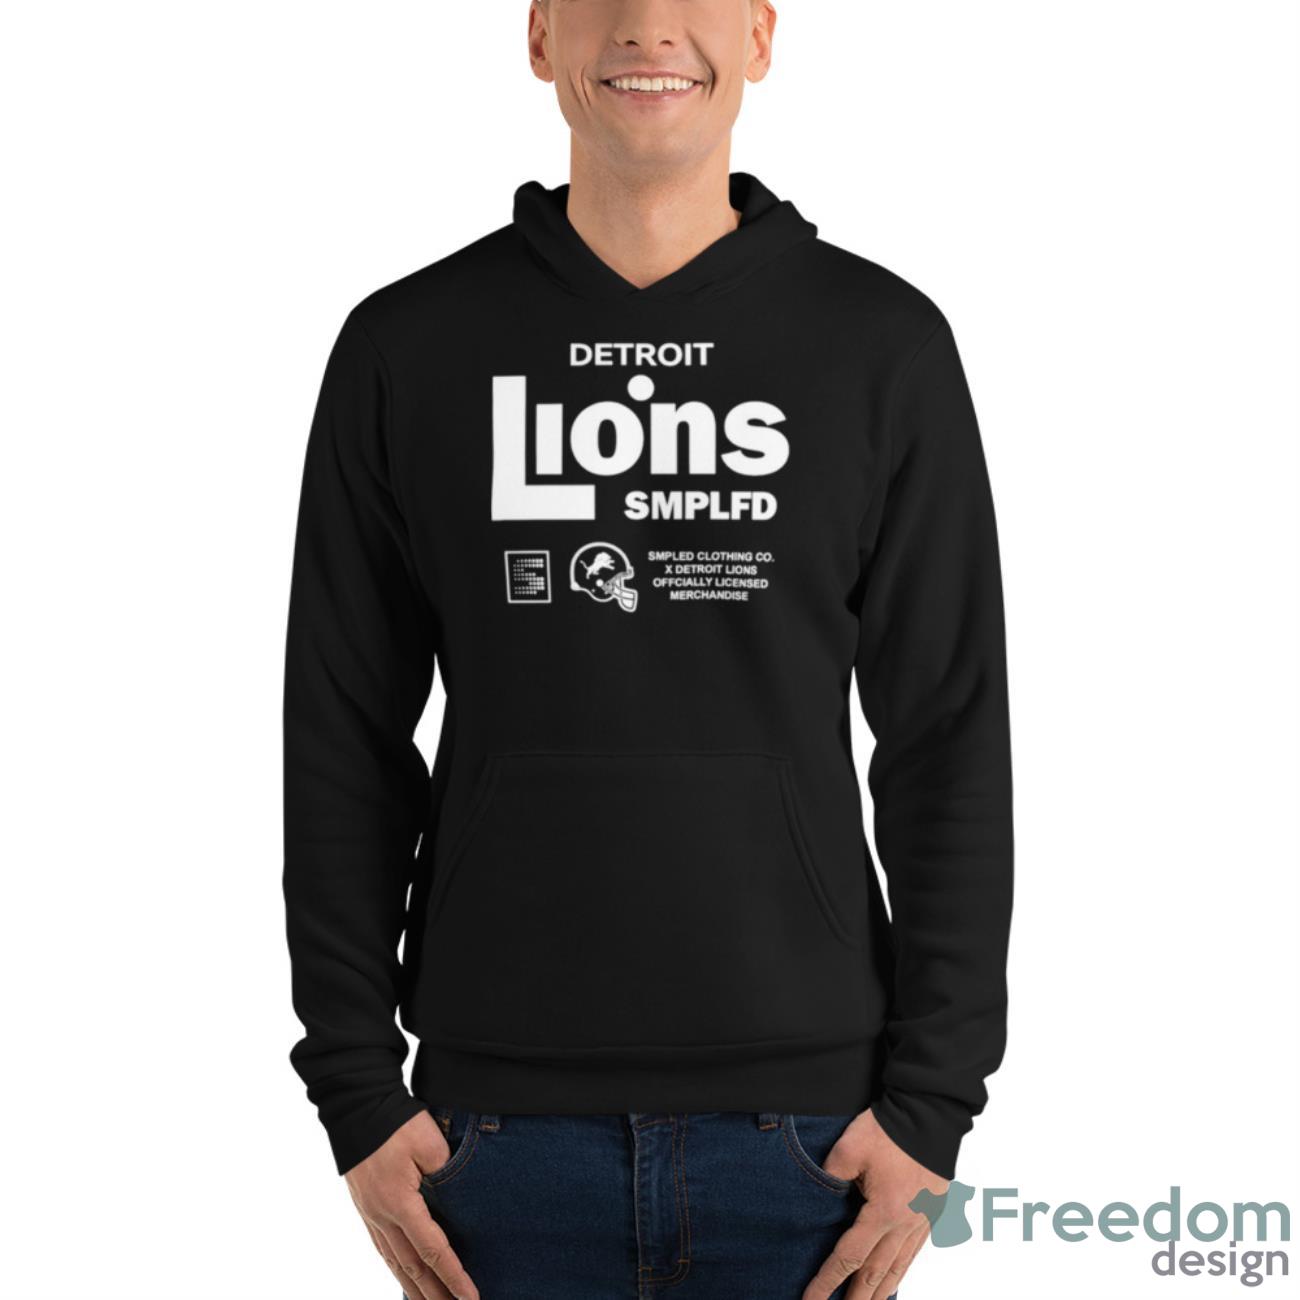 Detroit Lions Smplfd Shirt, Custom prints store